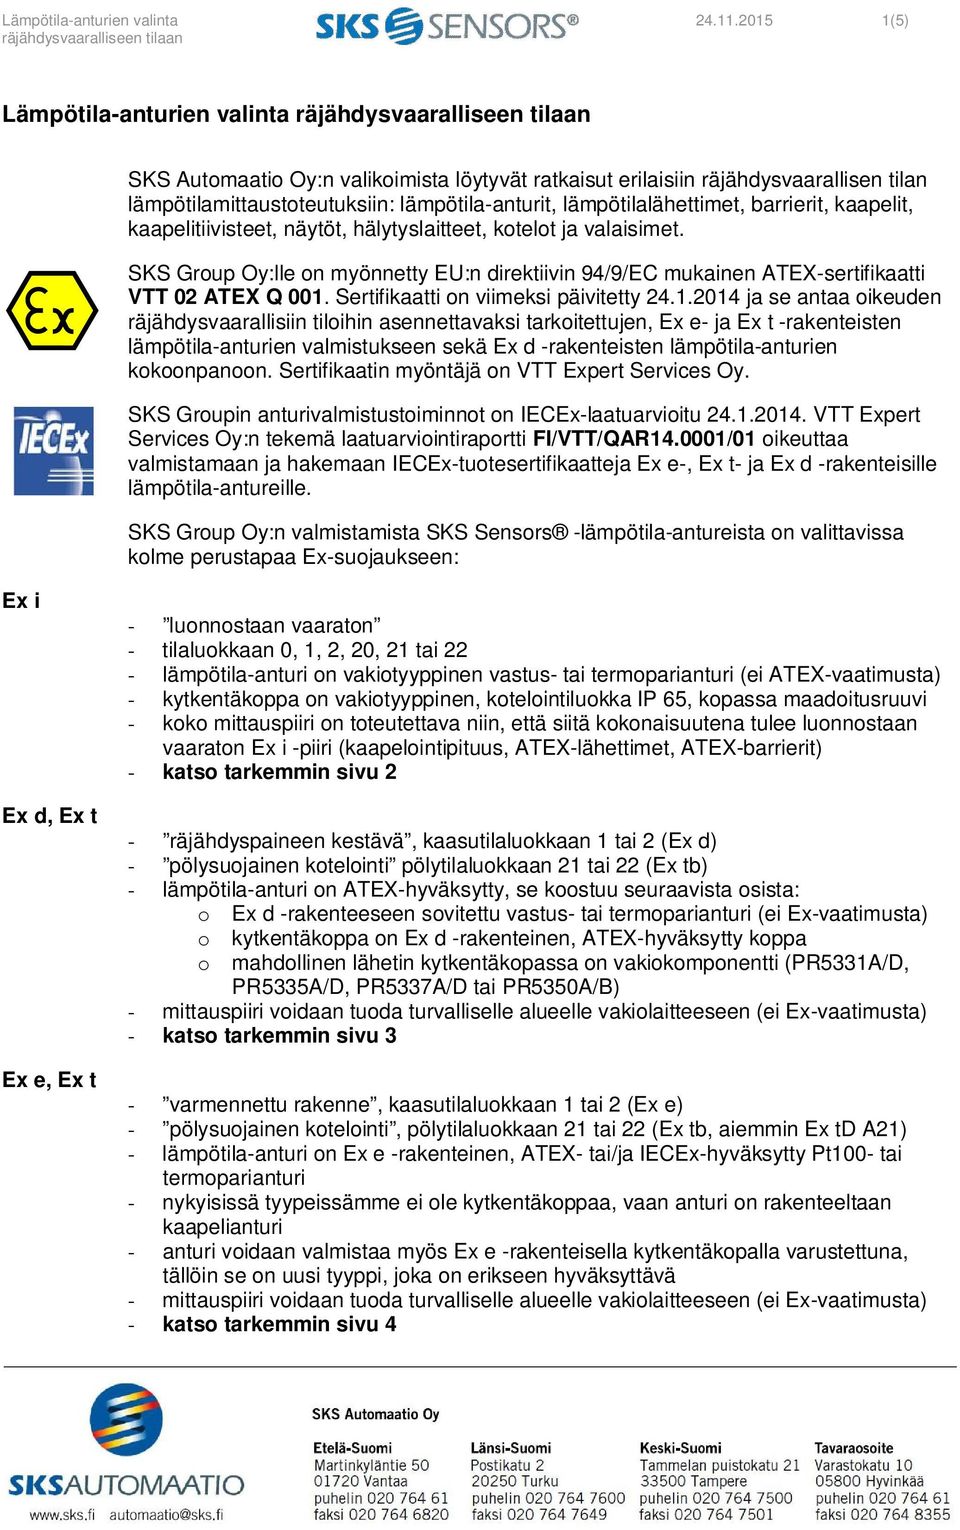 barrierit, kaapelit, kaapelitiivisteet, näytöt, hälytyslaitteet, kotelot ja valaisimet. SKS Group Oy:lle on myönnetty EU:n direktiivin 94/9/EC mukainen ATEX-sertifikaatti VTT 02 ATEX Q 001.